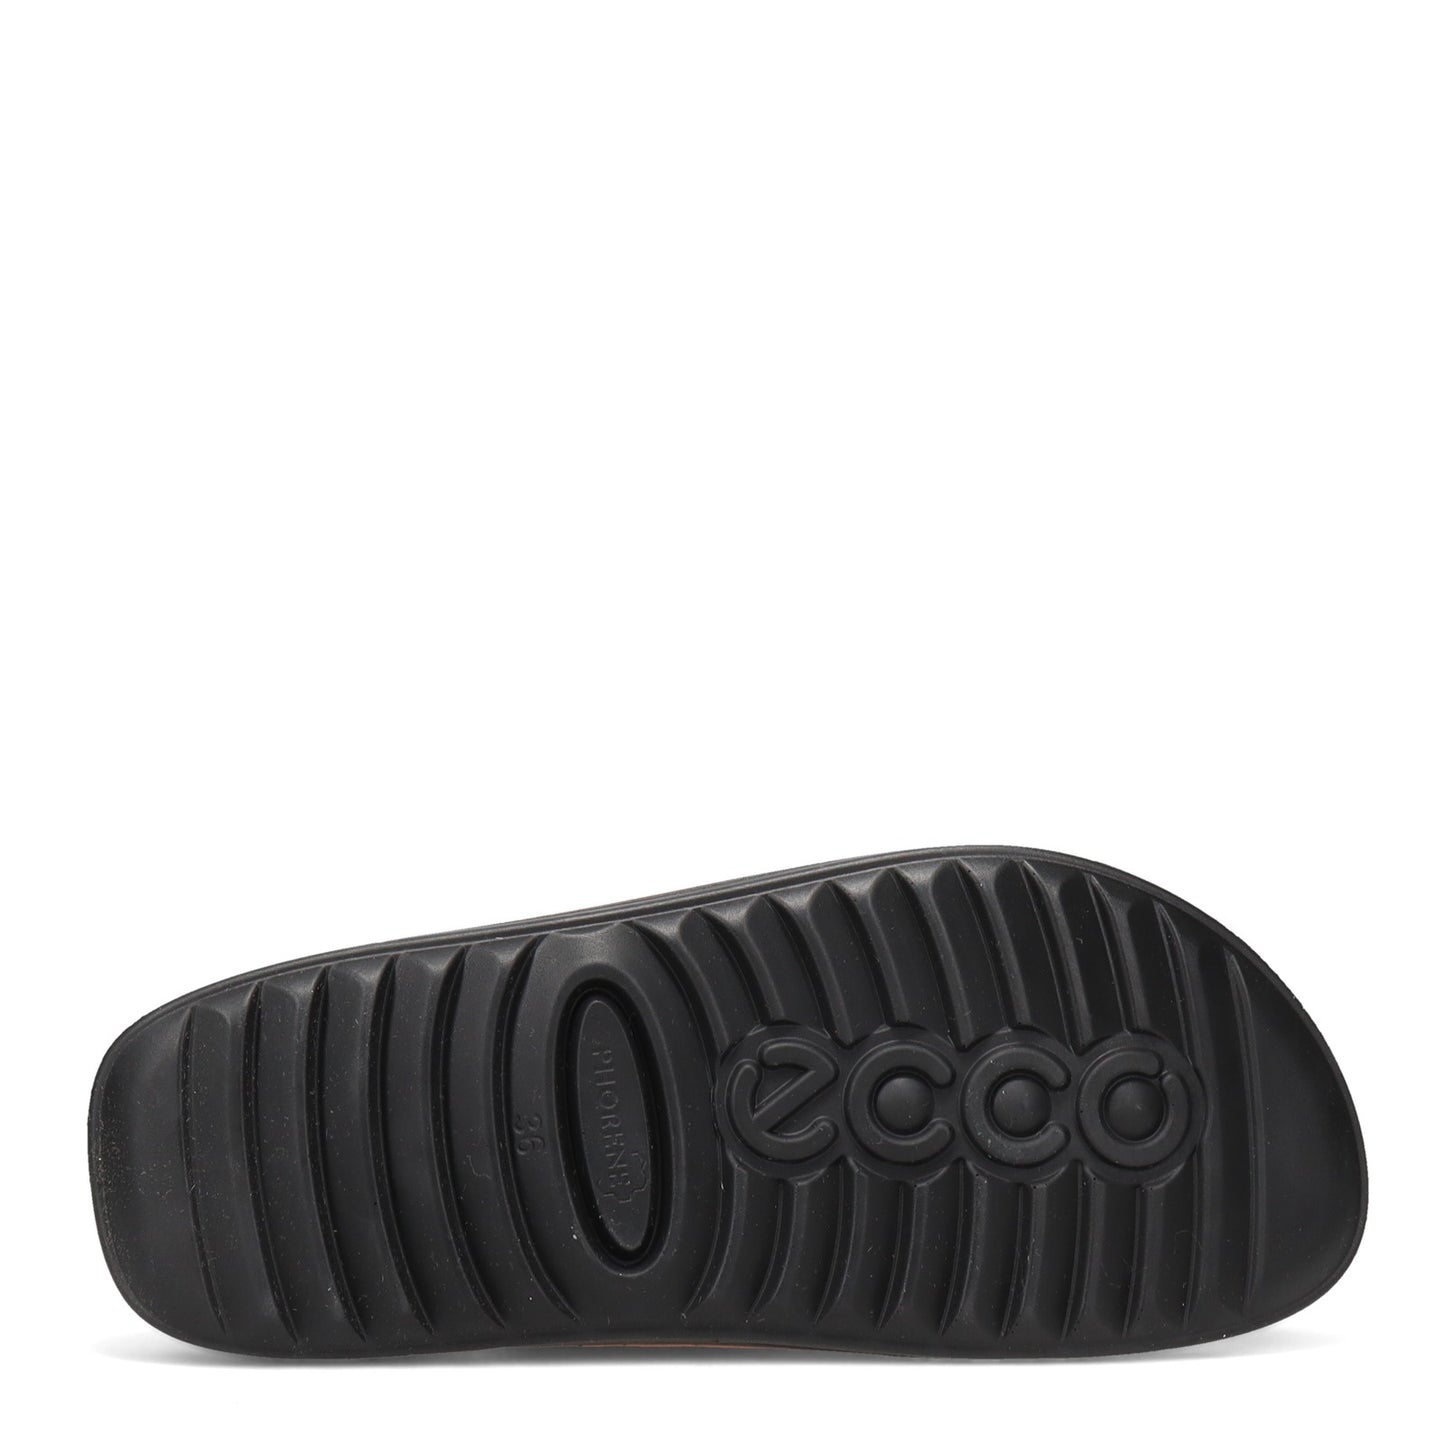 Peltz Shoes  Women's Ecco 2nd Cozmo Sandal BRONZE 206823-01314